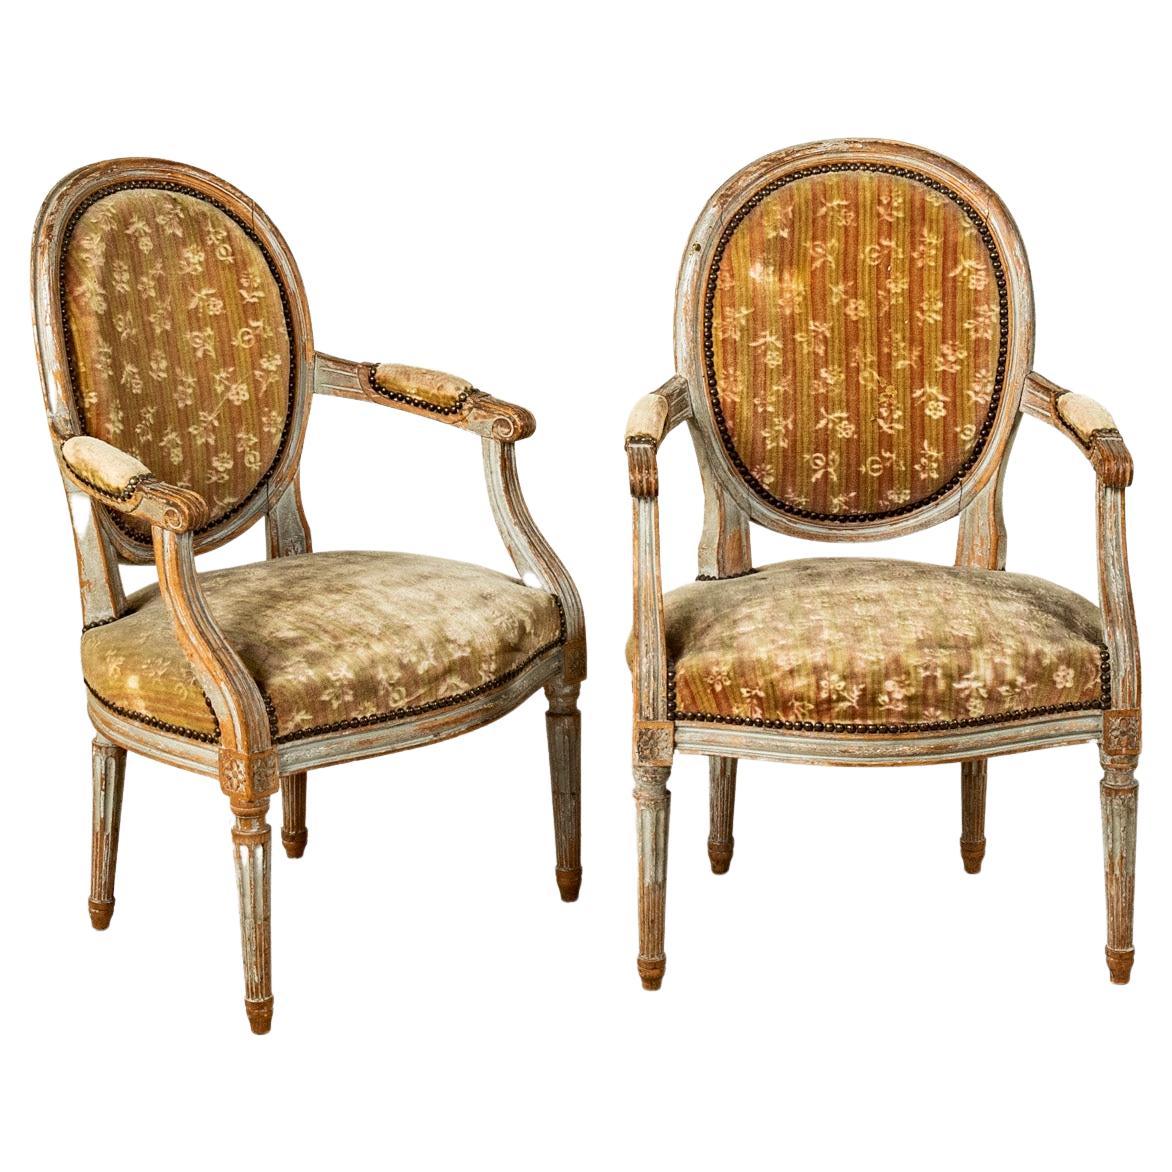 Späte 18. Jahrhundert Französisch Louis XVI Periode Hand geschnitzt Nussbaum Sessel